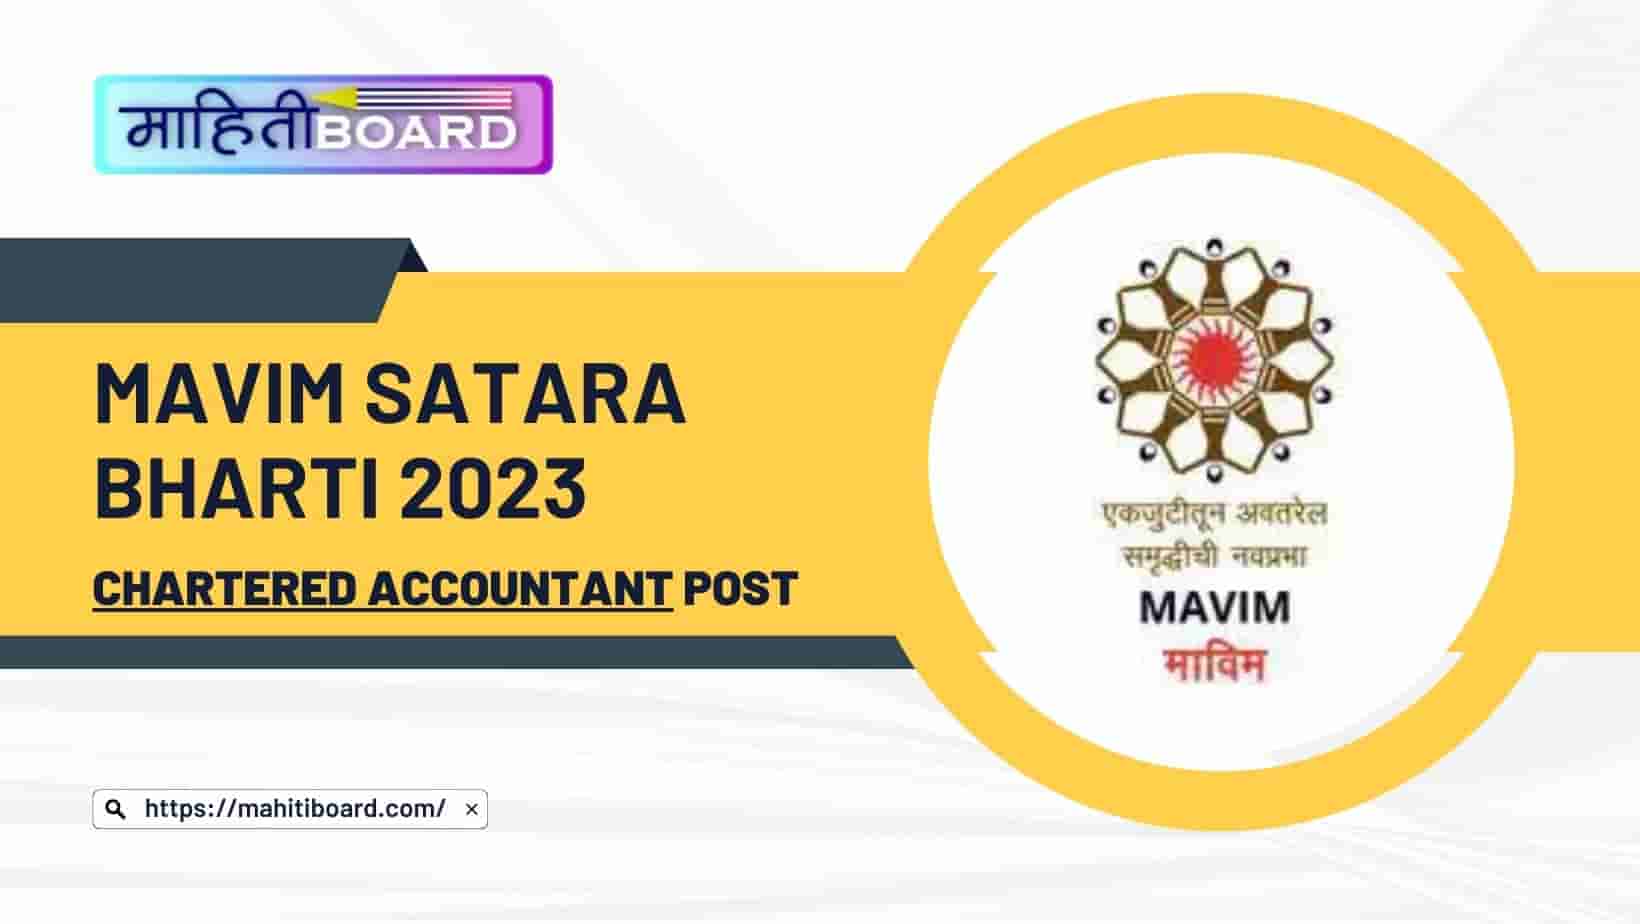 MAVIM Satara Bharti 2023